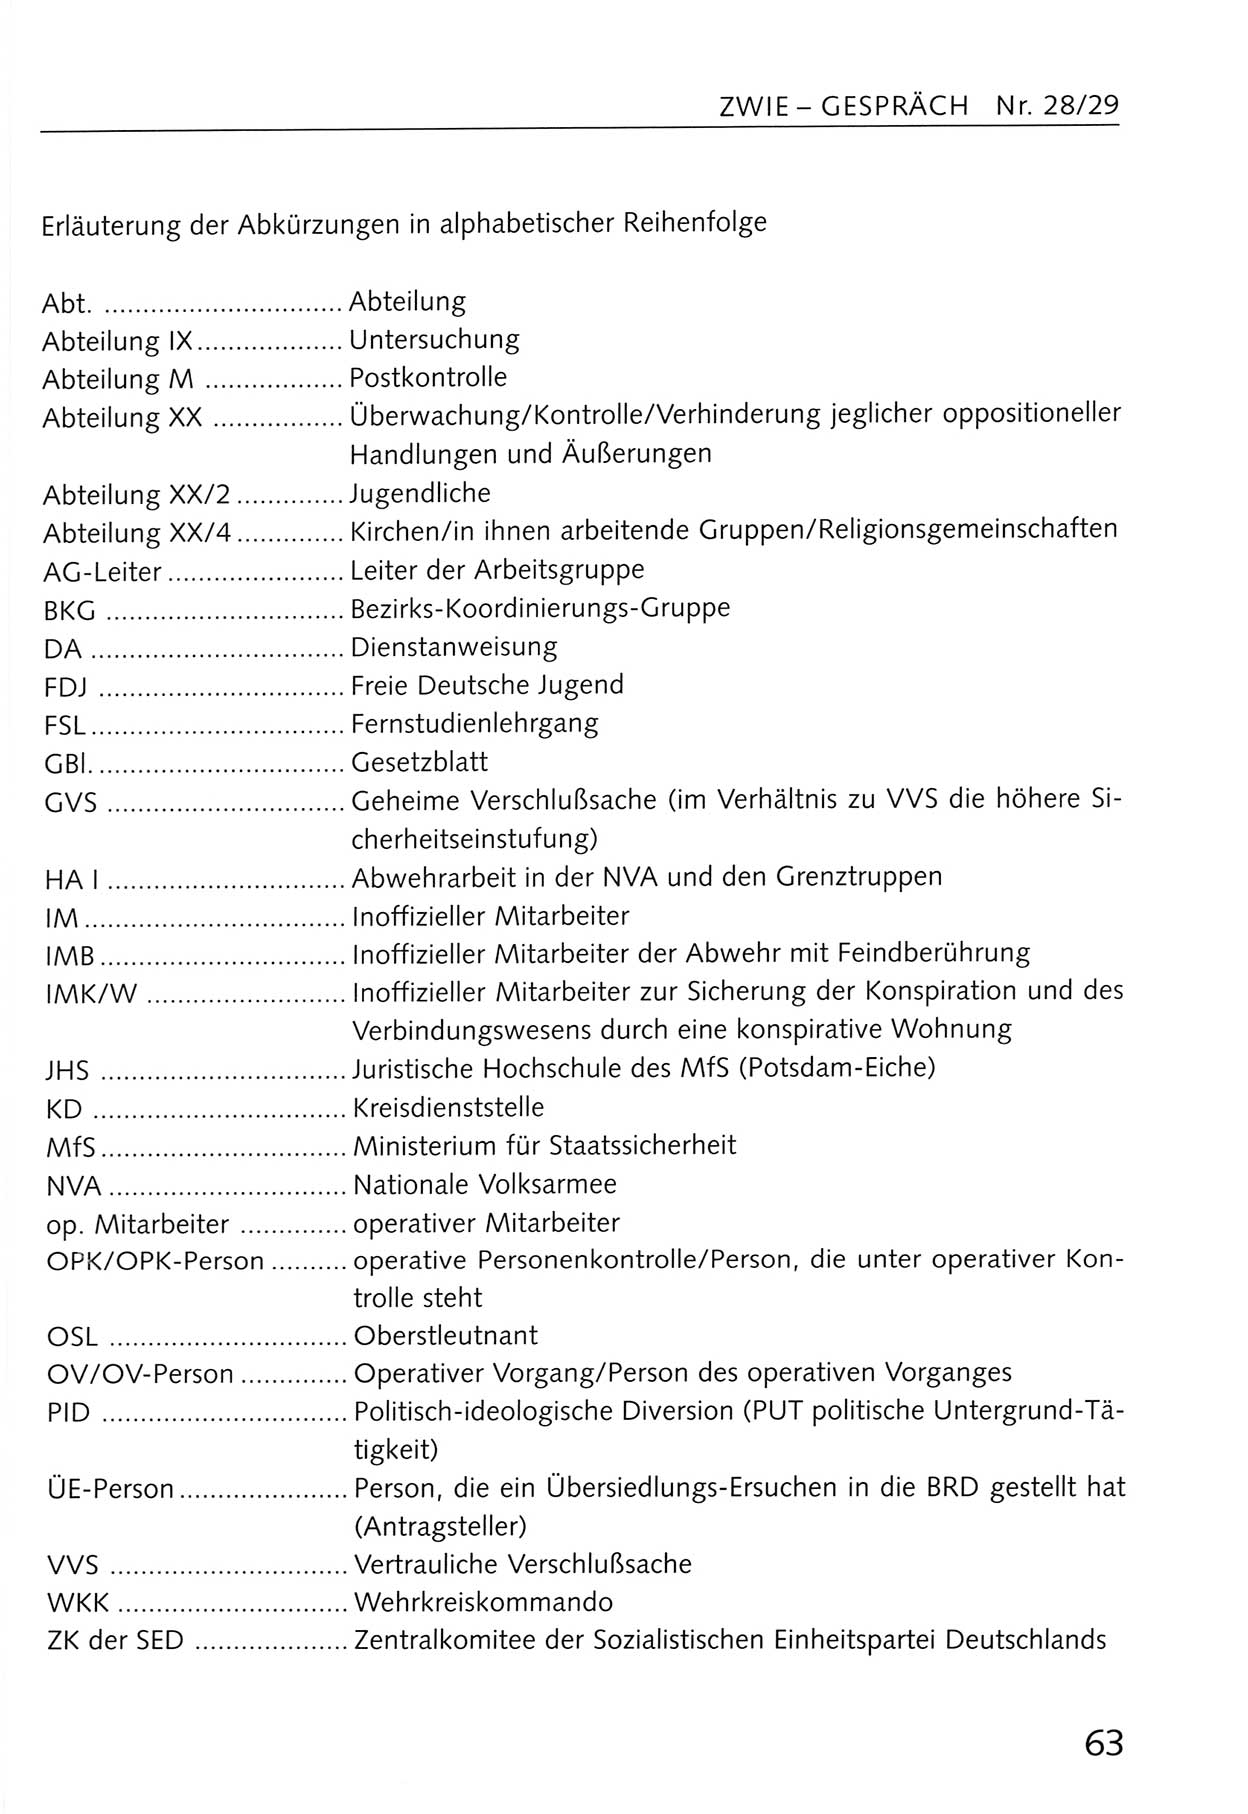 Zwie-Gespräch, Beiträge zum Umgang mit der Staatssicherheits-Vergangenheit [Deutsche Demokratische Republik (DDR)], Ausgabe Nr. 28/29, Berlin 1995, Seite 63 (Zwie-Gespr. Ausg. 28/29 1995, S. 63)